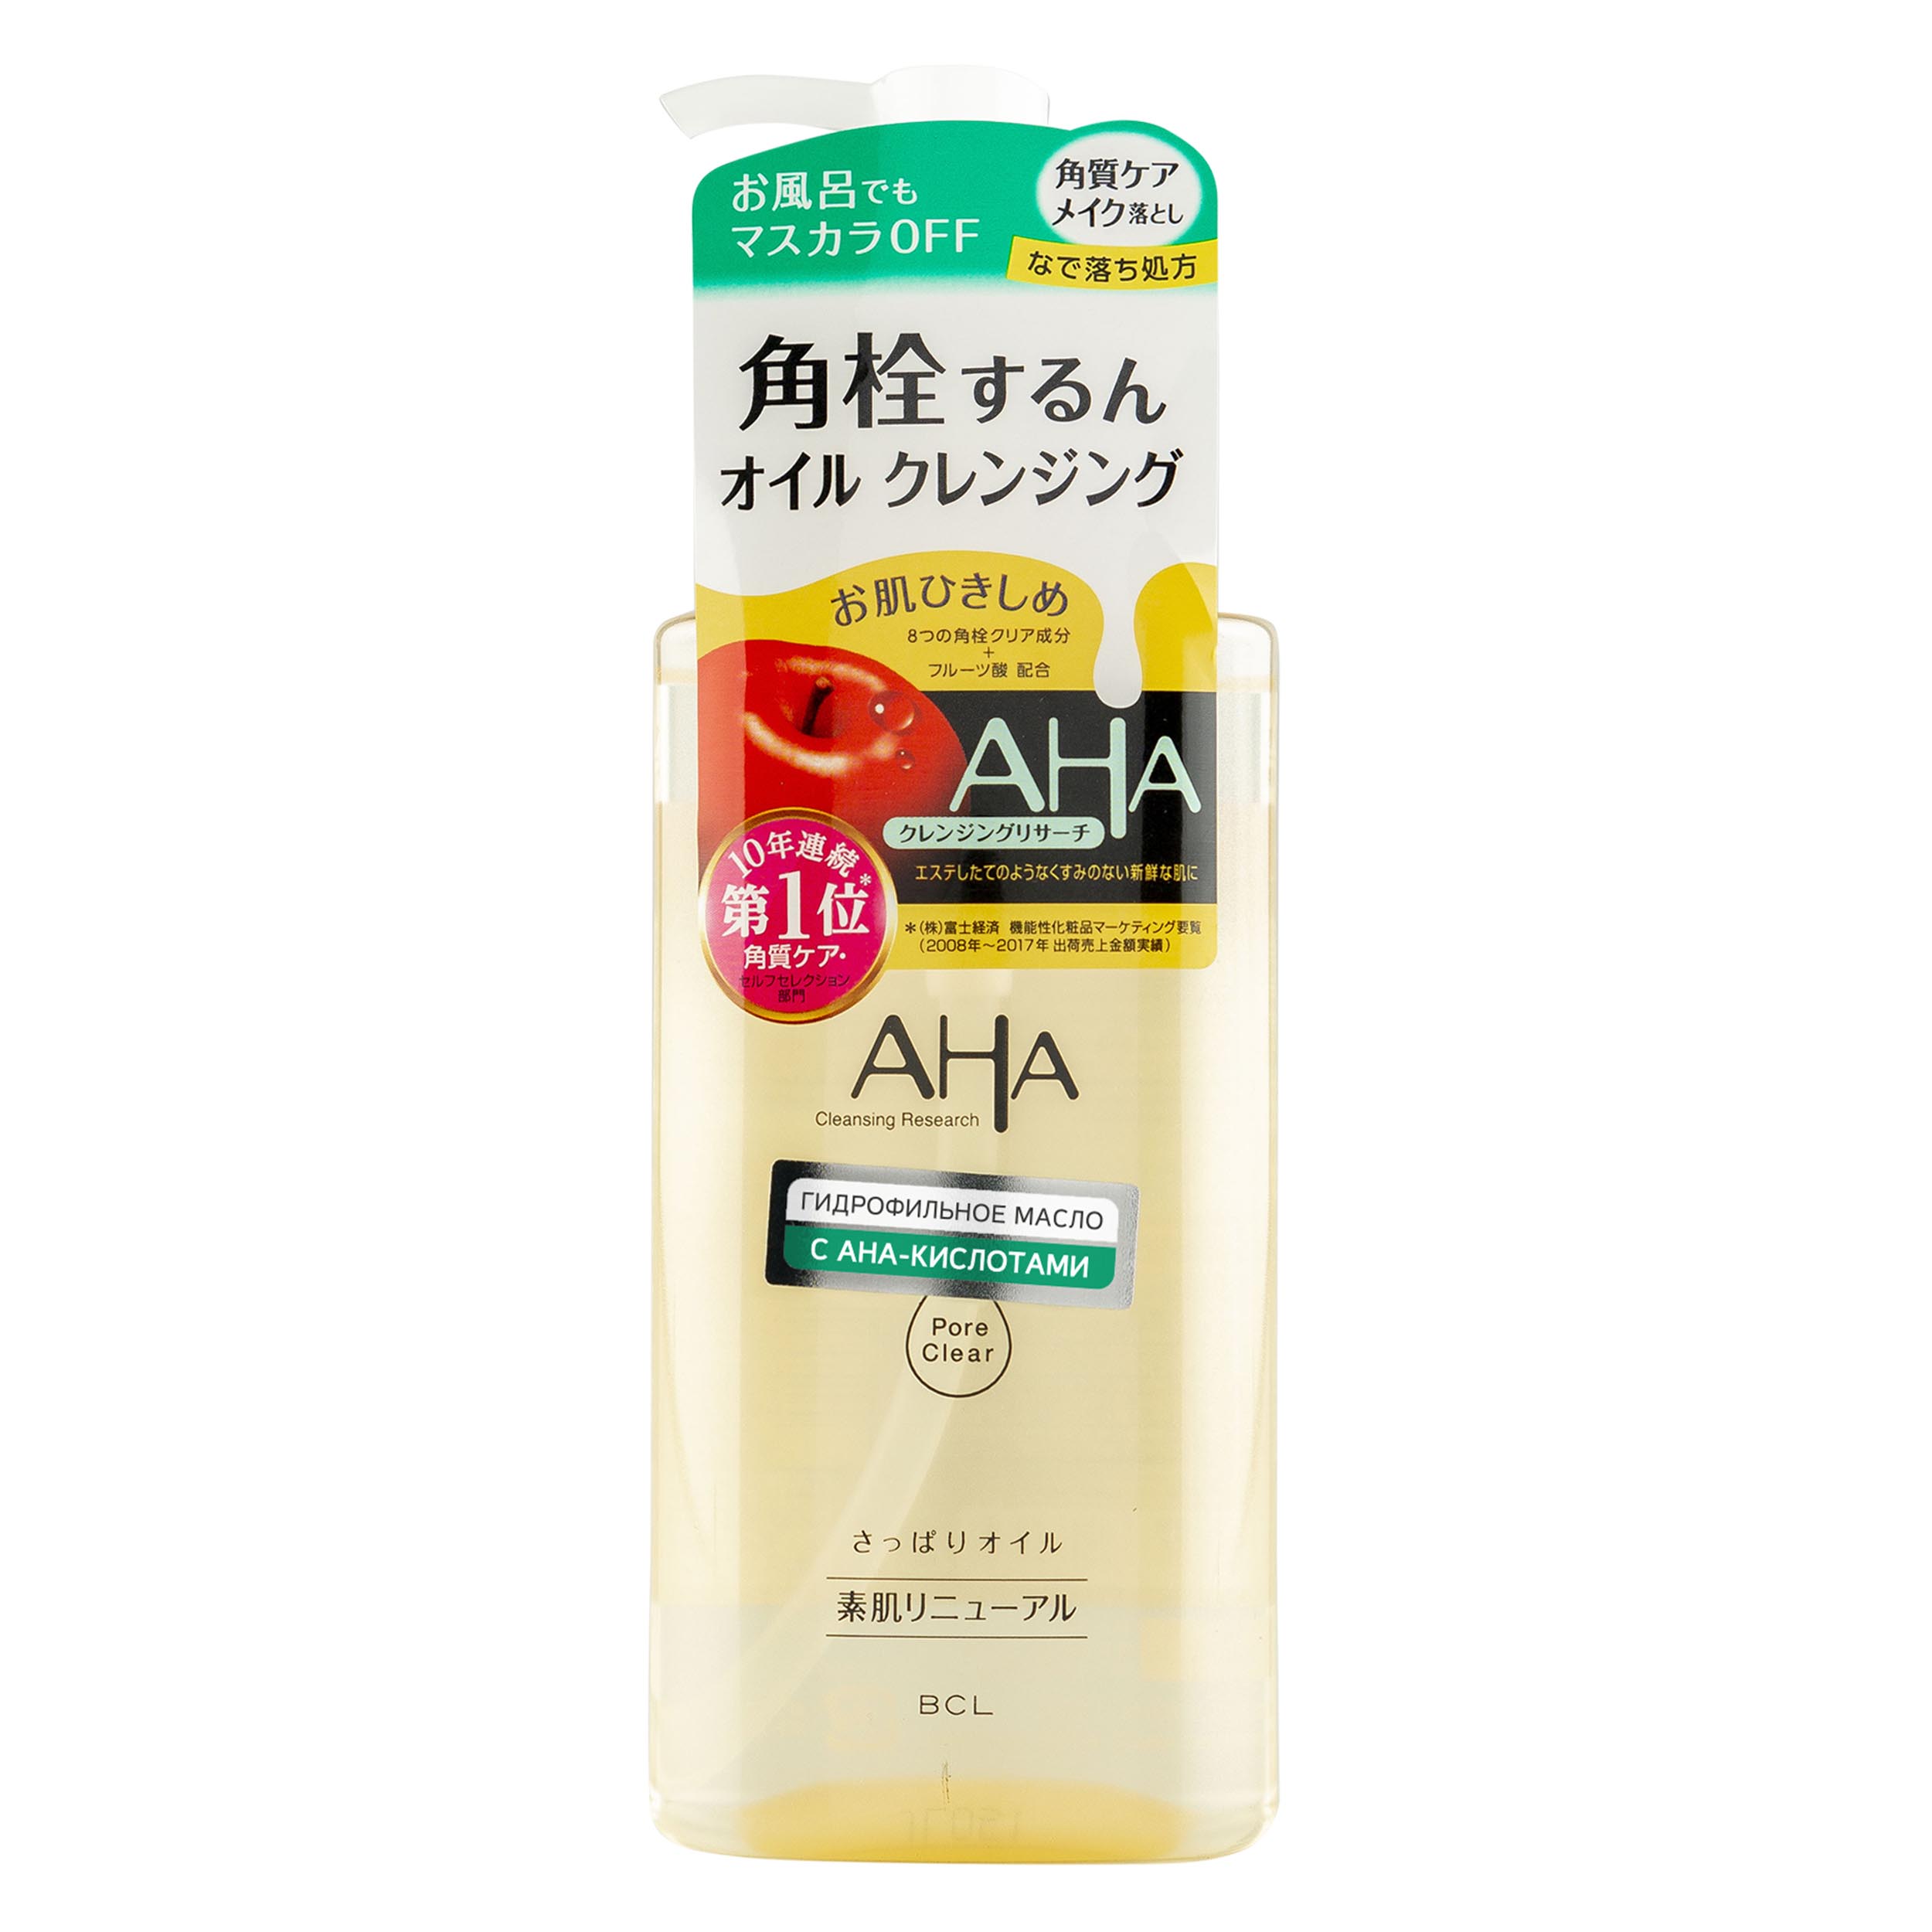 Аха Гидрофильное масло для снятия макияжа с фруктовыми кислотами для нормальной и комбинированной кожи, 200 мл (Aha, Basic) фото 0